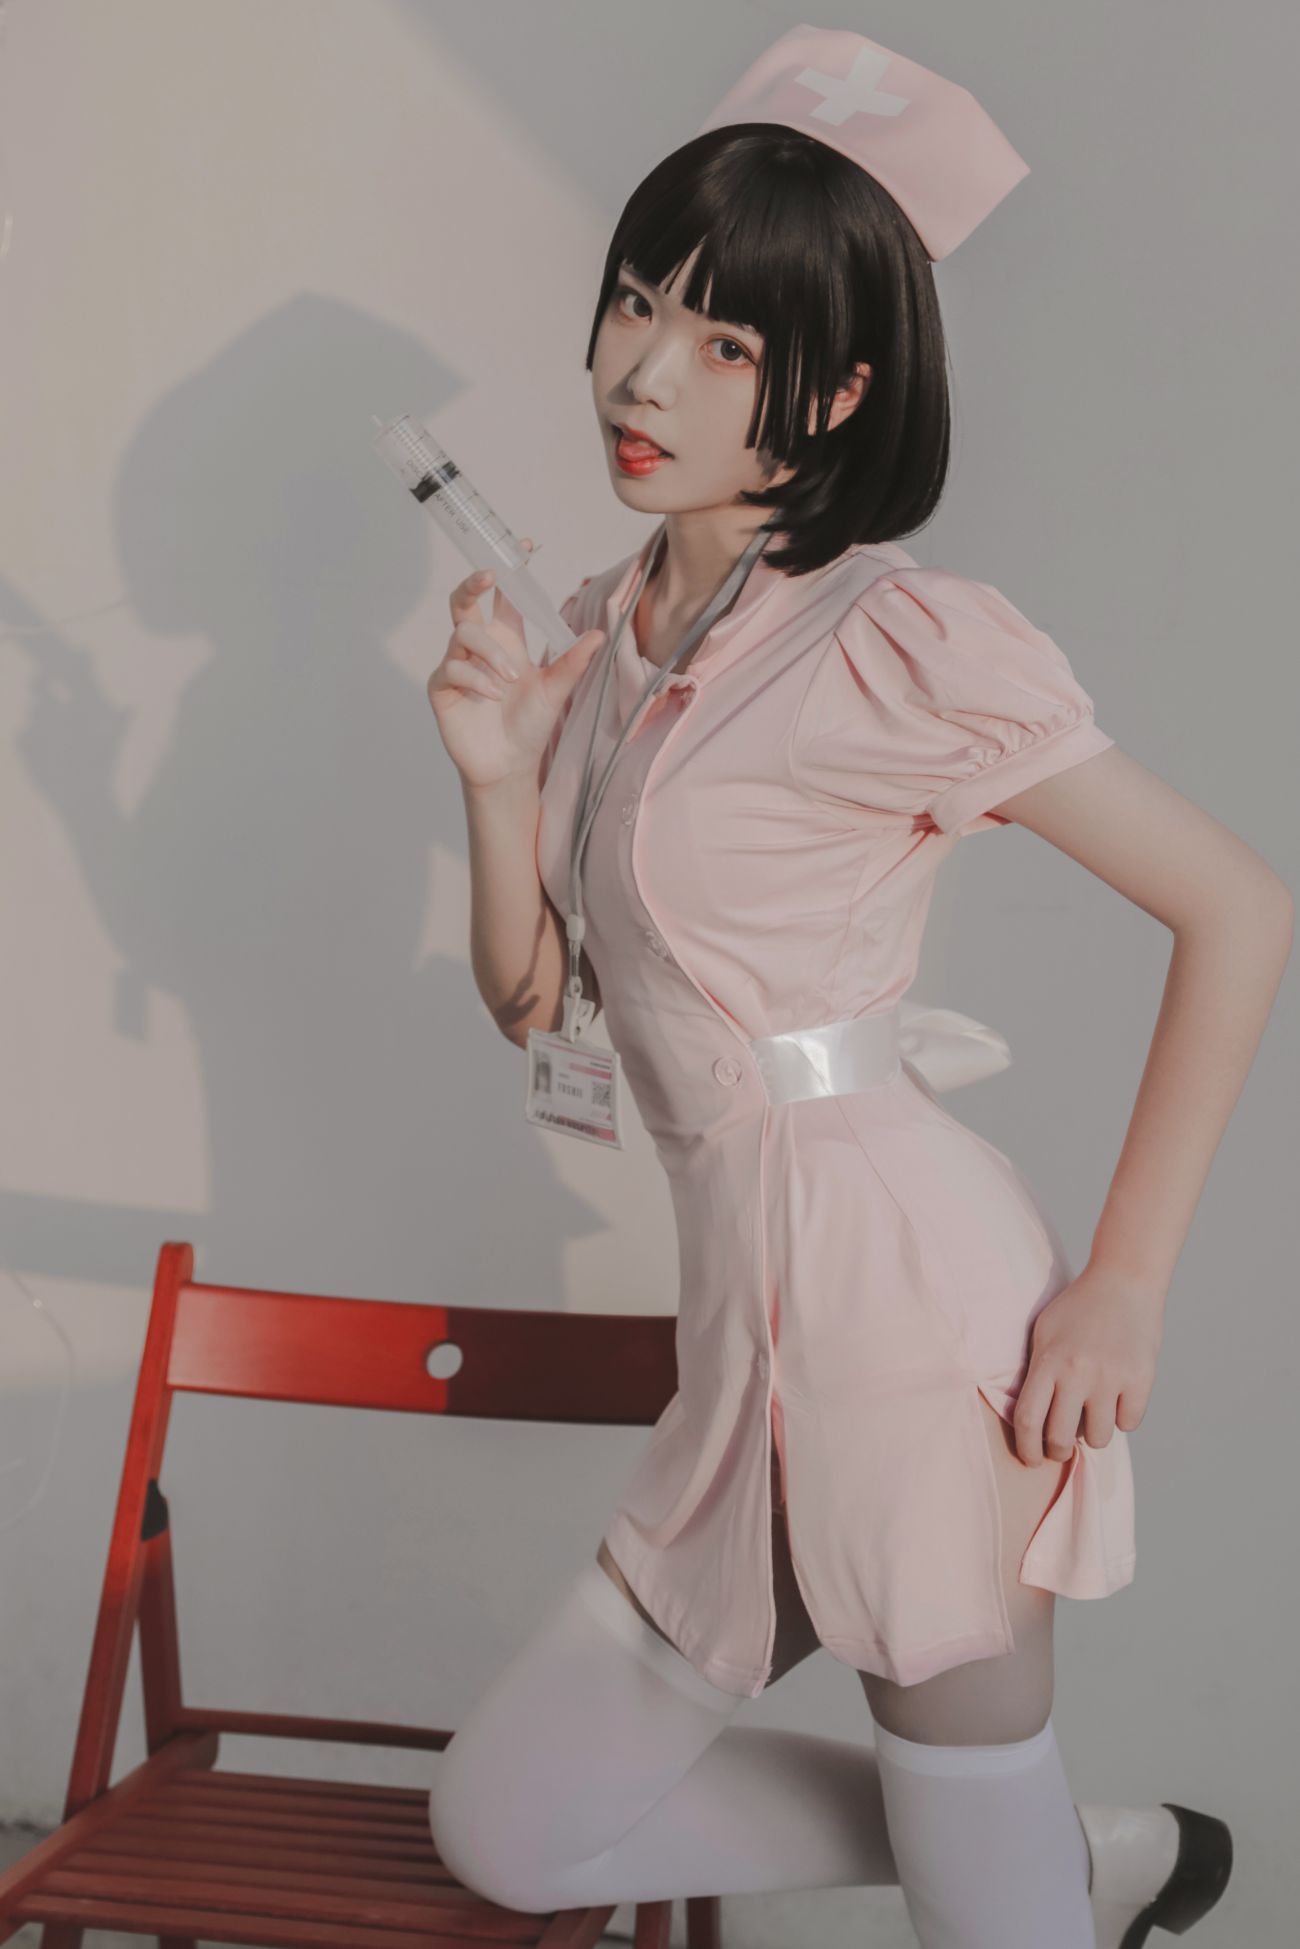 微博美少女Fushii海堂Cosplay性感写真护士 (20)